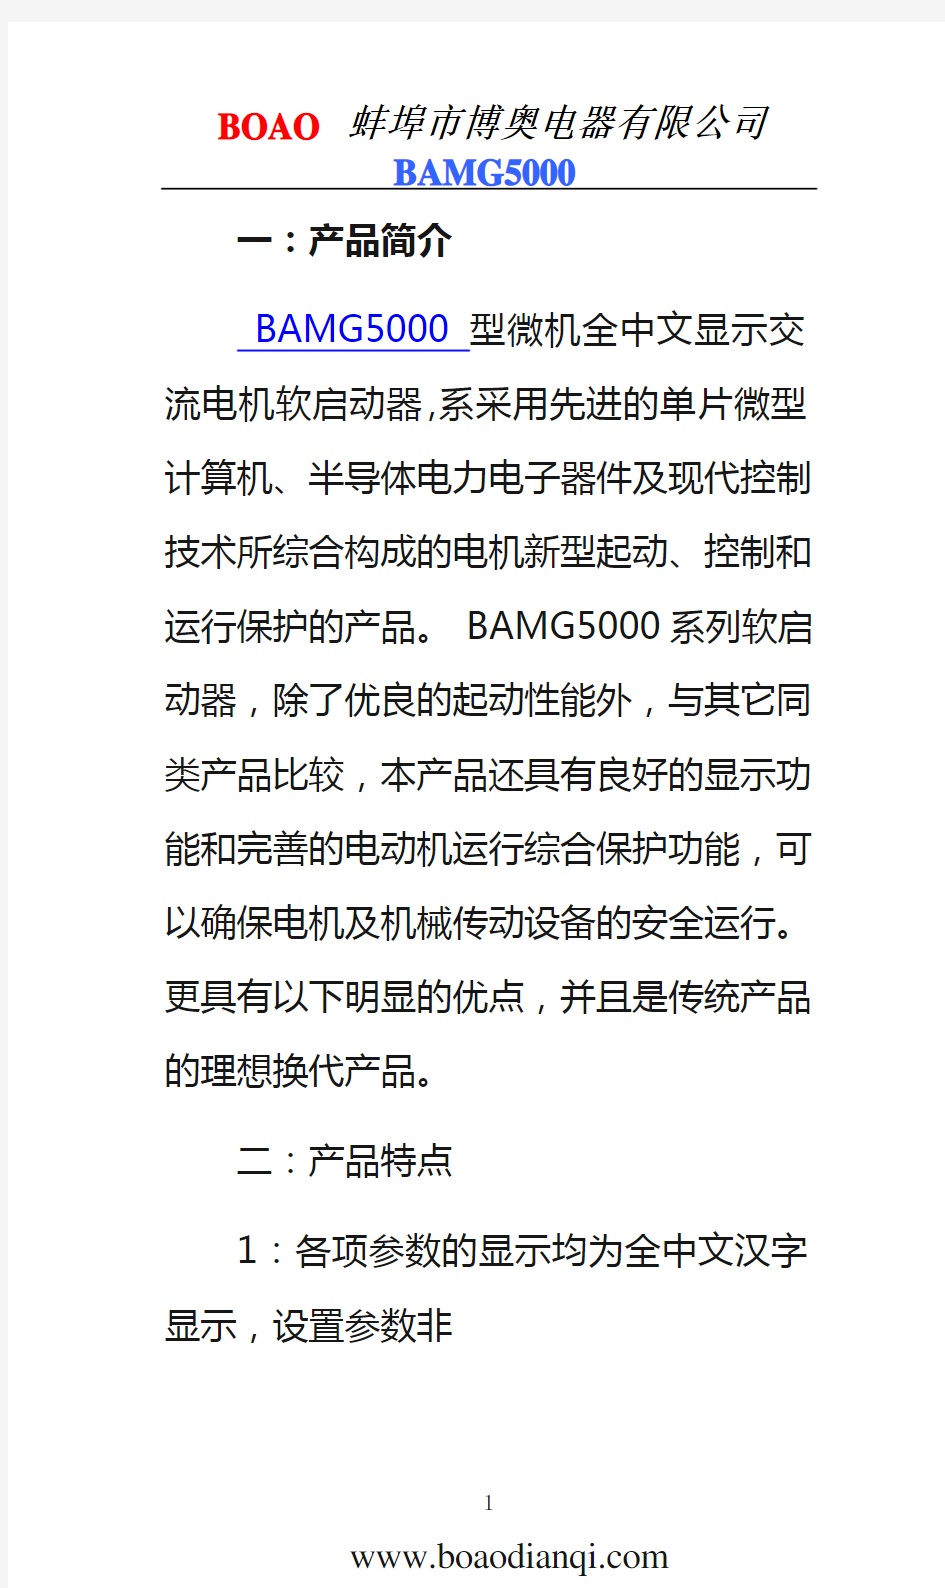 中文软启动标准说明书